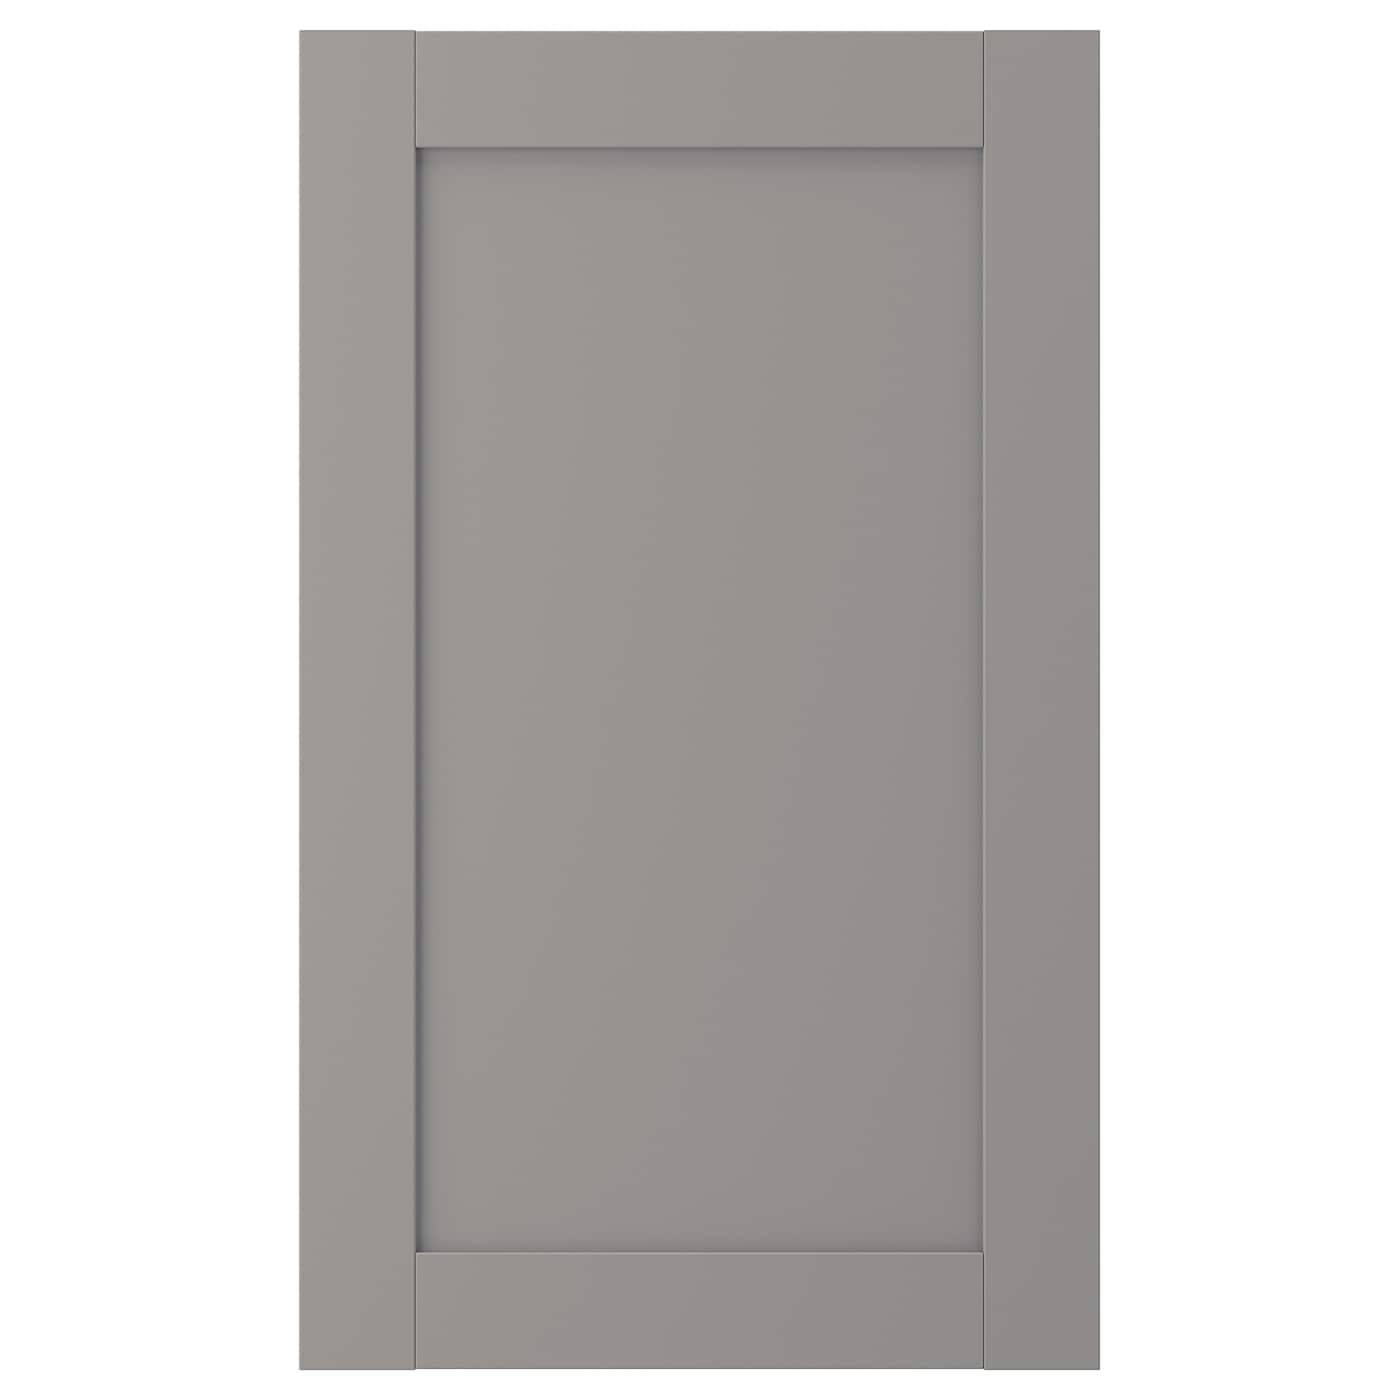 Фасад для посудомоечной машины - IKEA ENHET, 75х45 см, серый, ЭНХЕТ ИКЕА